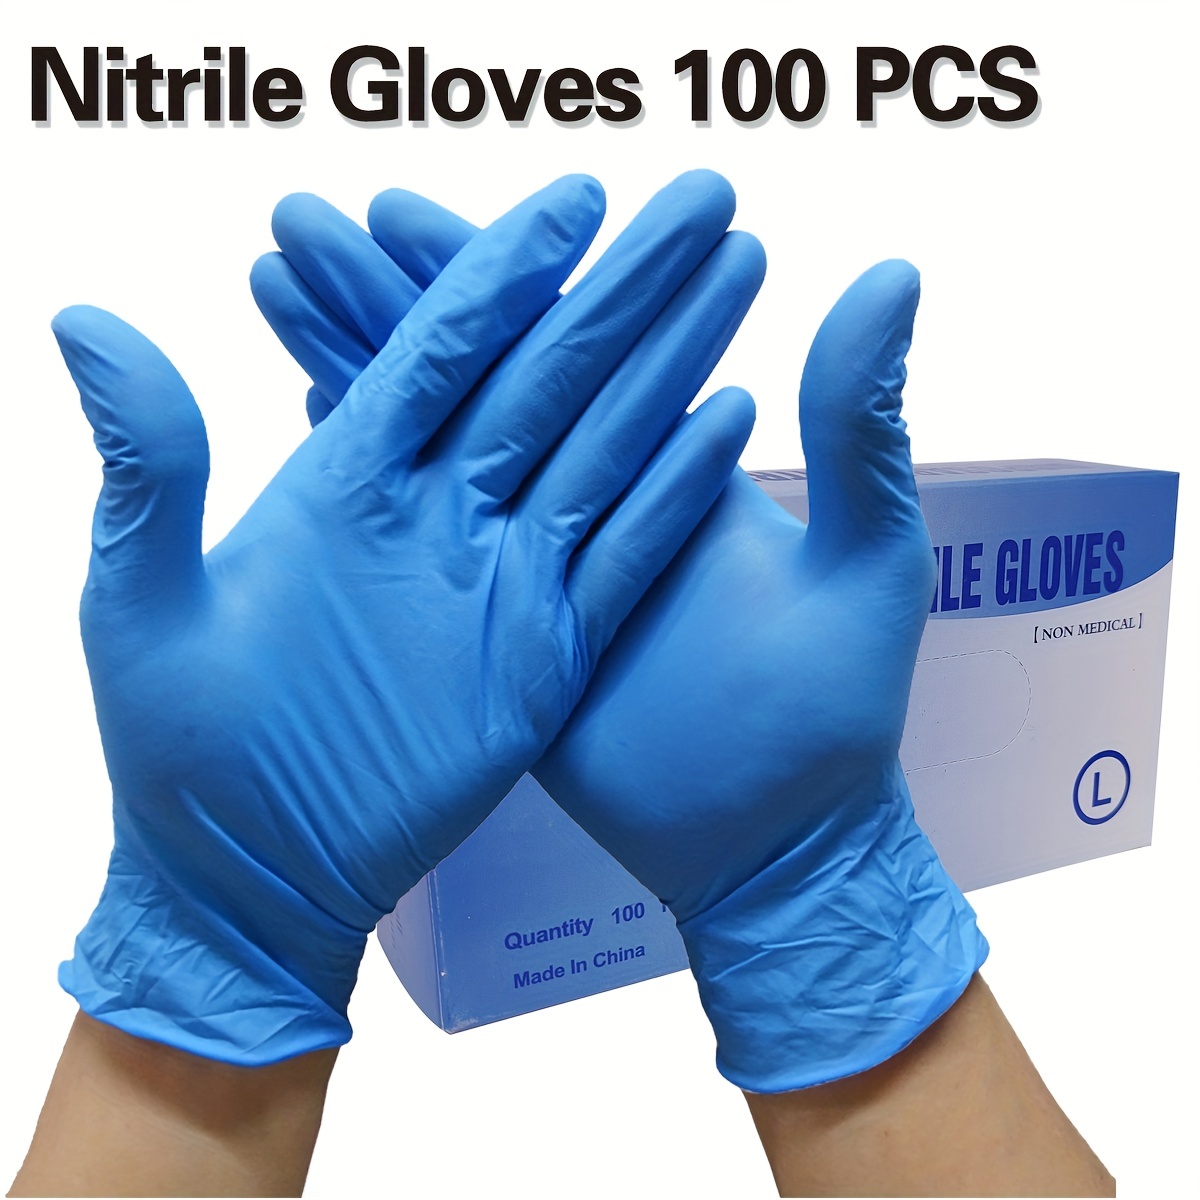 Guantes desechables de nitrilo de gran tamaño, sin polvo, sin látex, 100  piezas, azul.